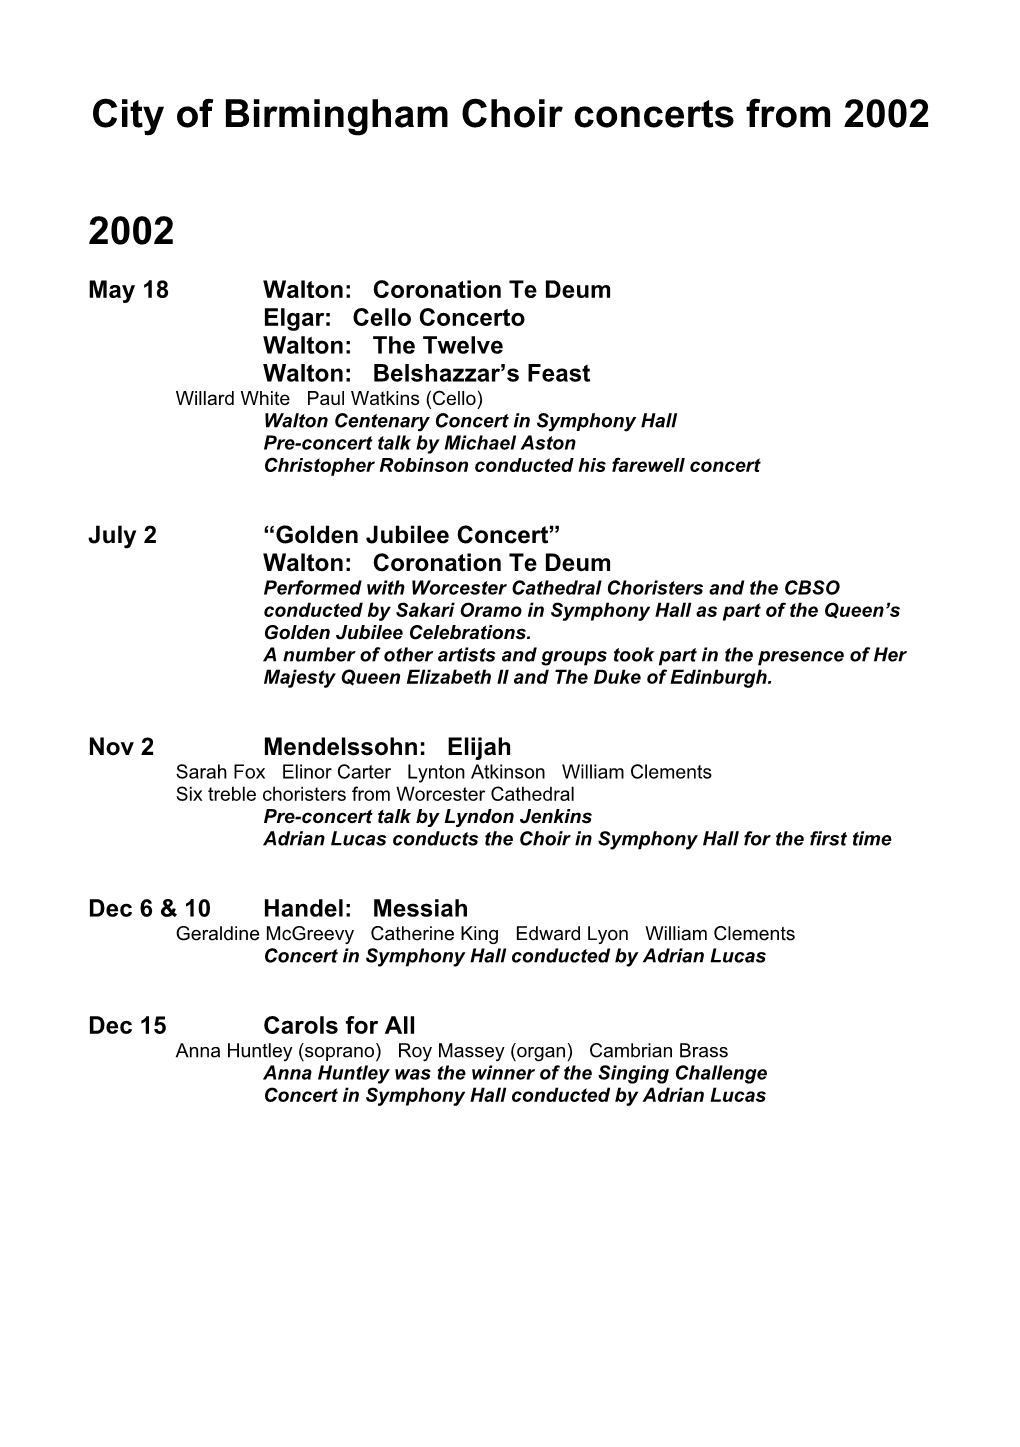 Concert List 2002